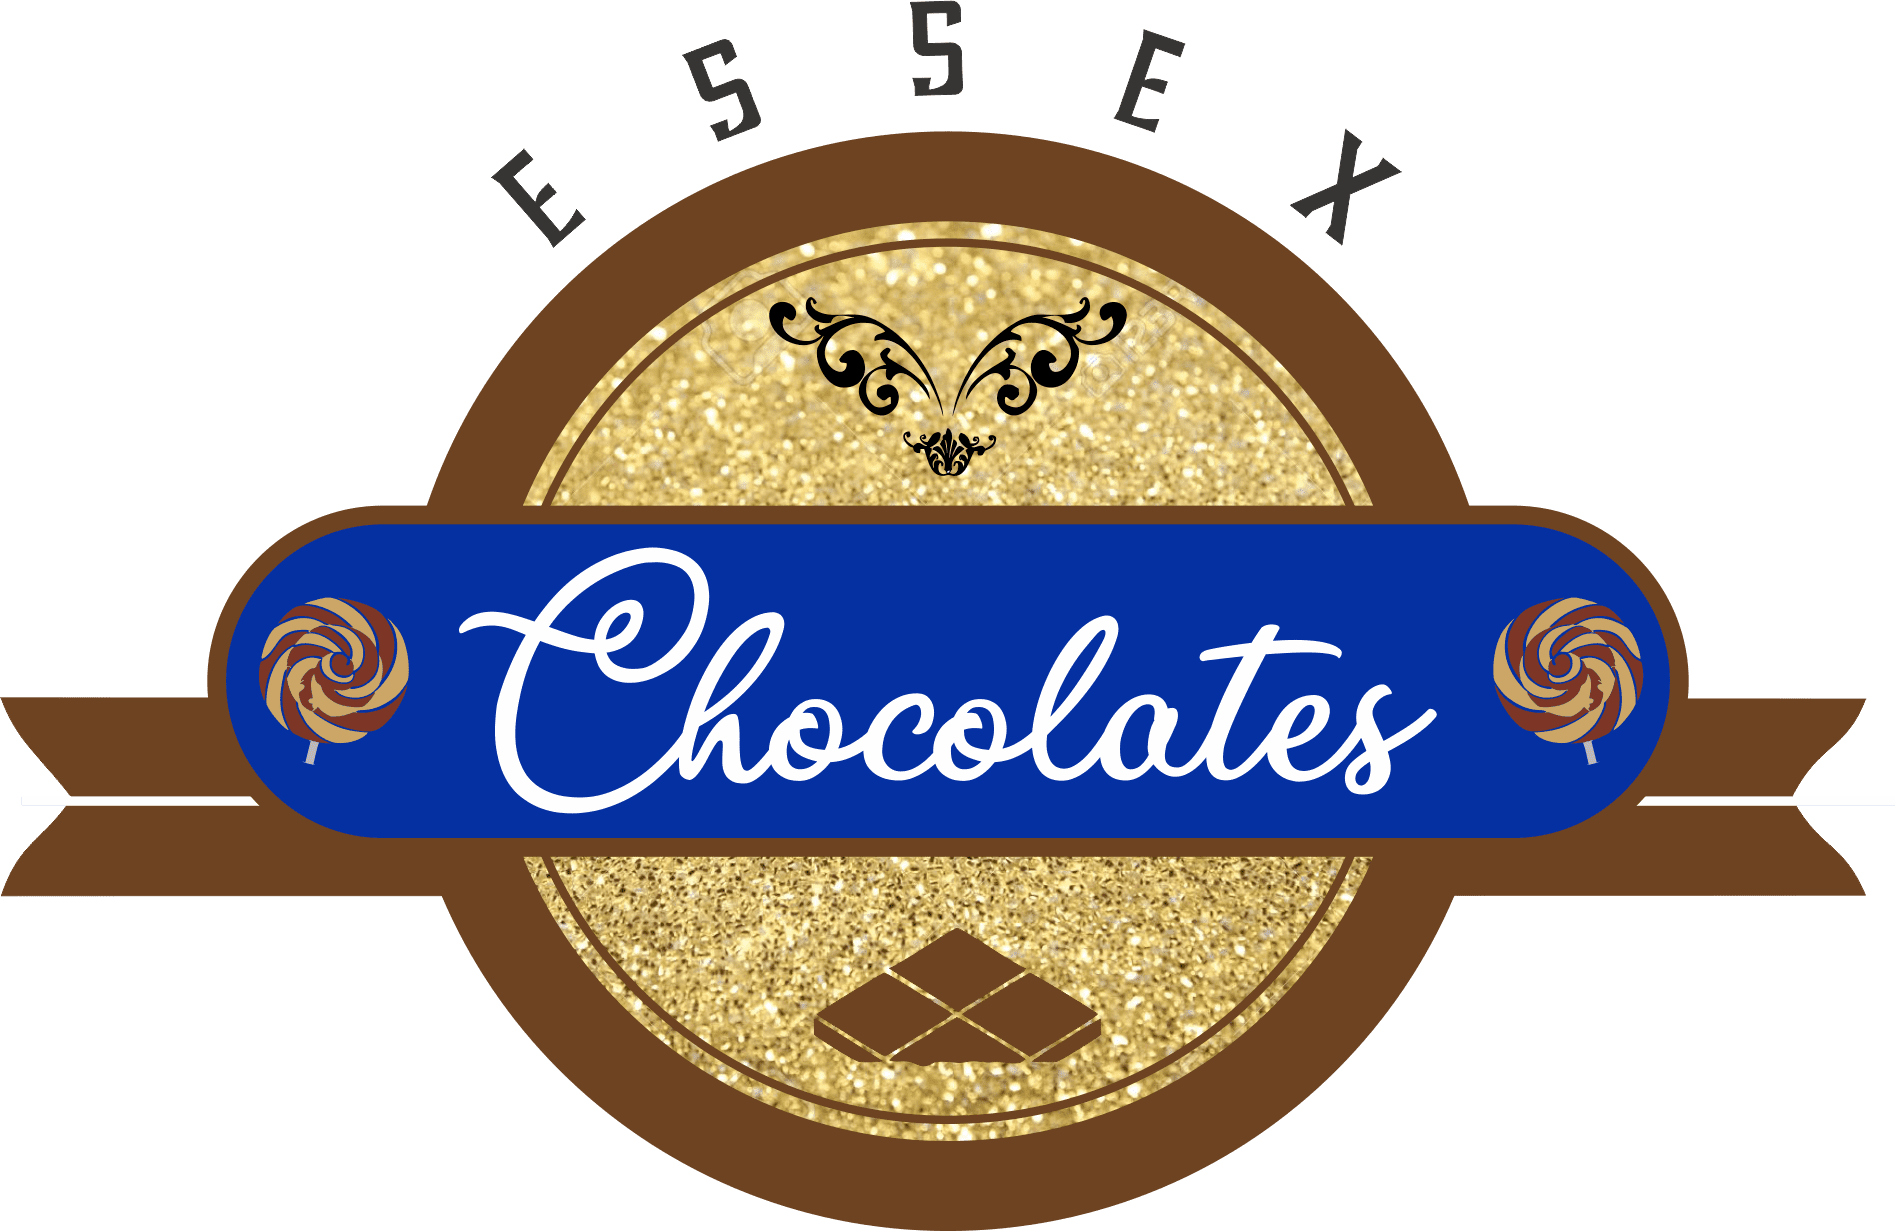 Essex Chocolates - Order Online - Delivery - Essex